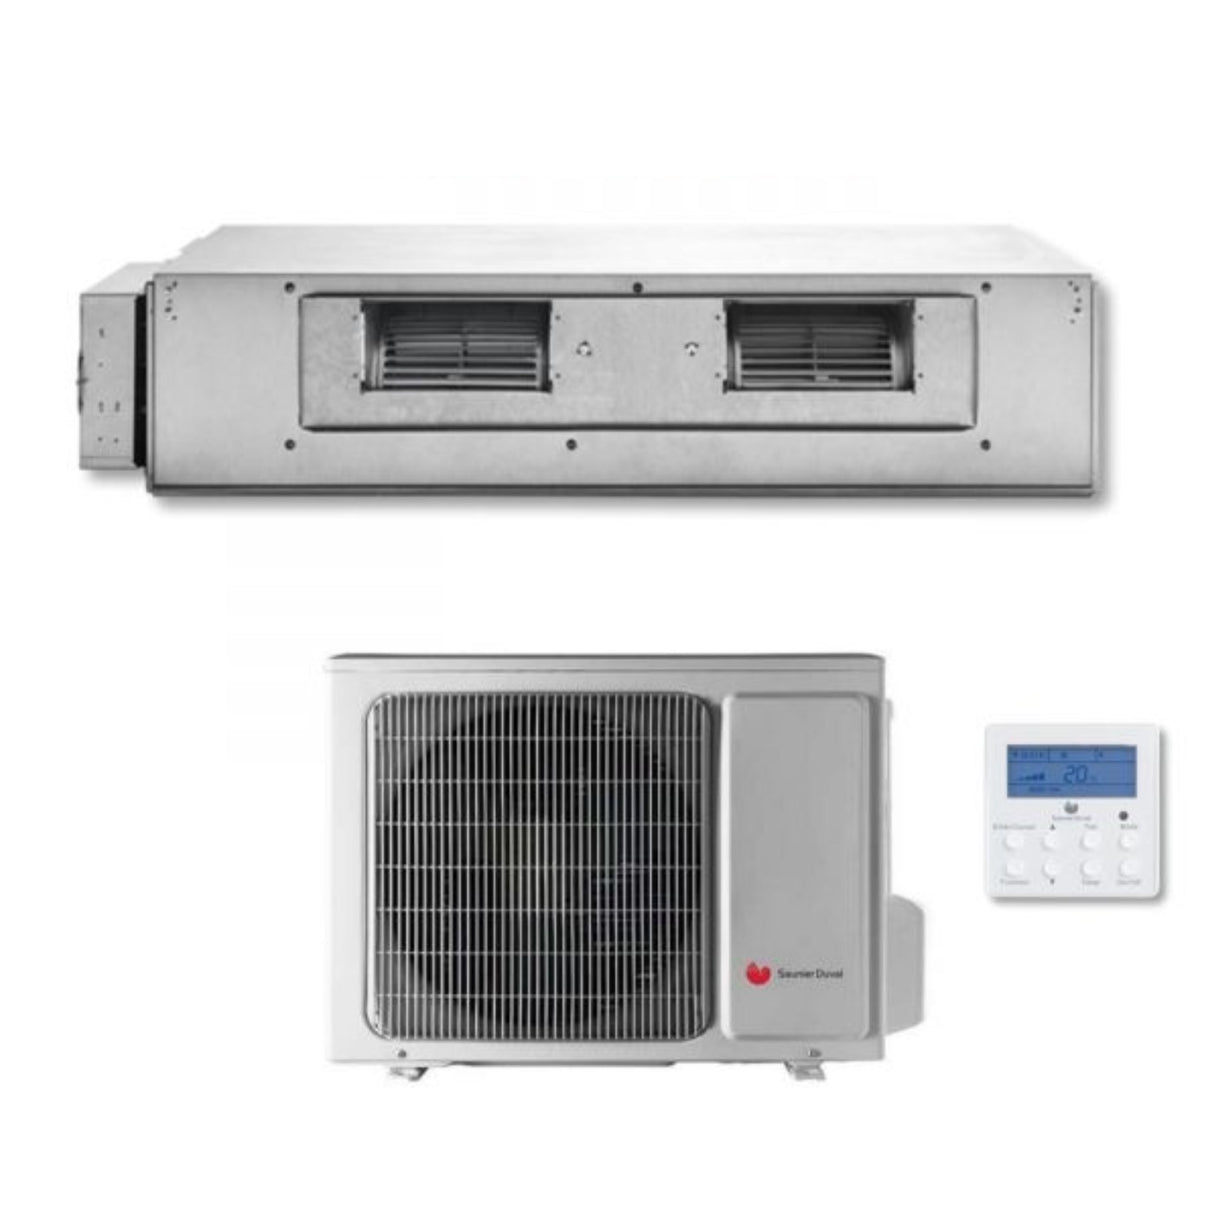 immagine-1-hermann-saunier-duval-climatizzatore-condizionatore-hermann-saunier-duval-canalizzato-canalizzabile-inverter-24000-btu-sdh17-070-nd-r-410-classe-a-sottocosto